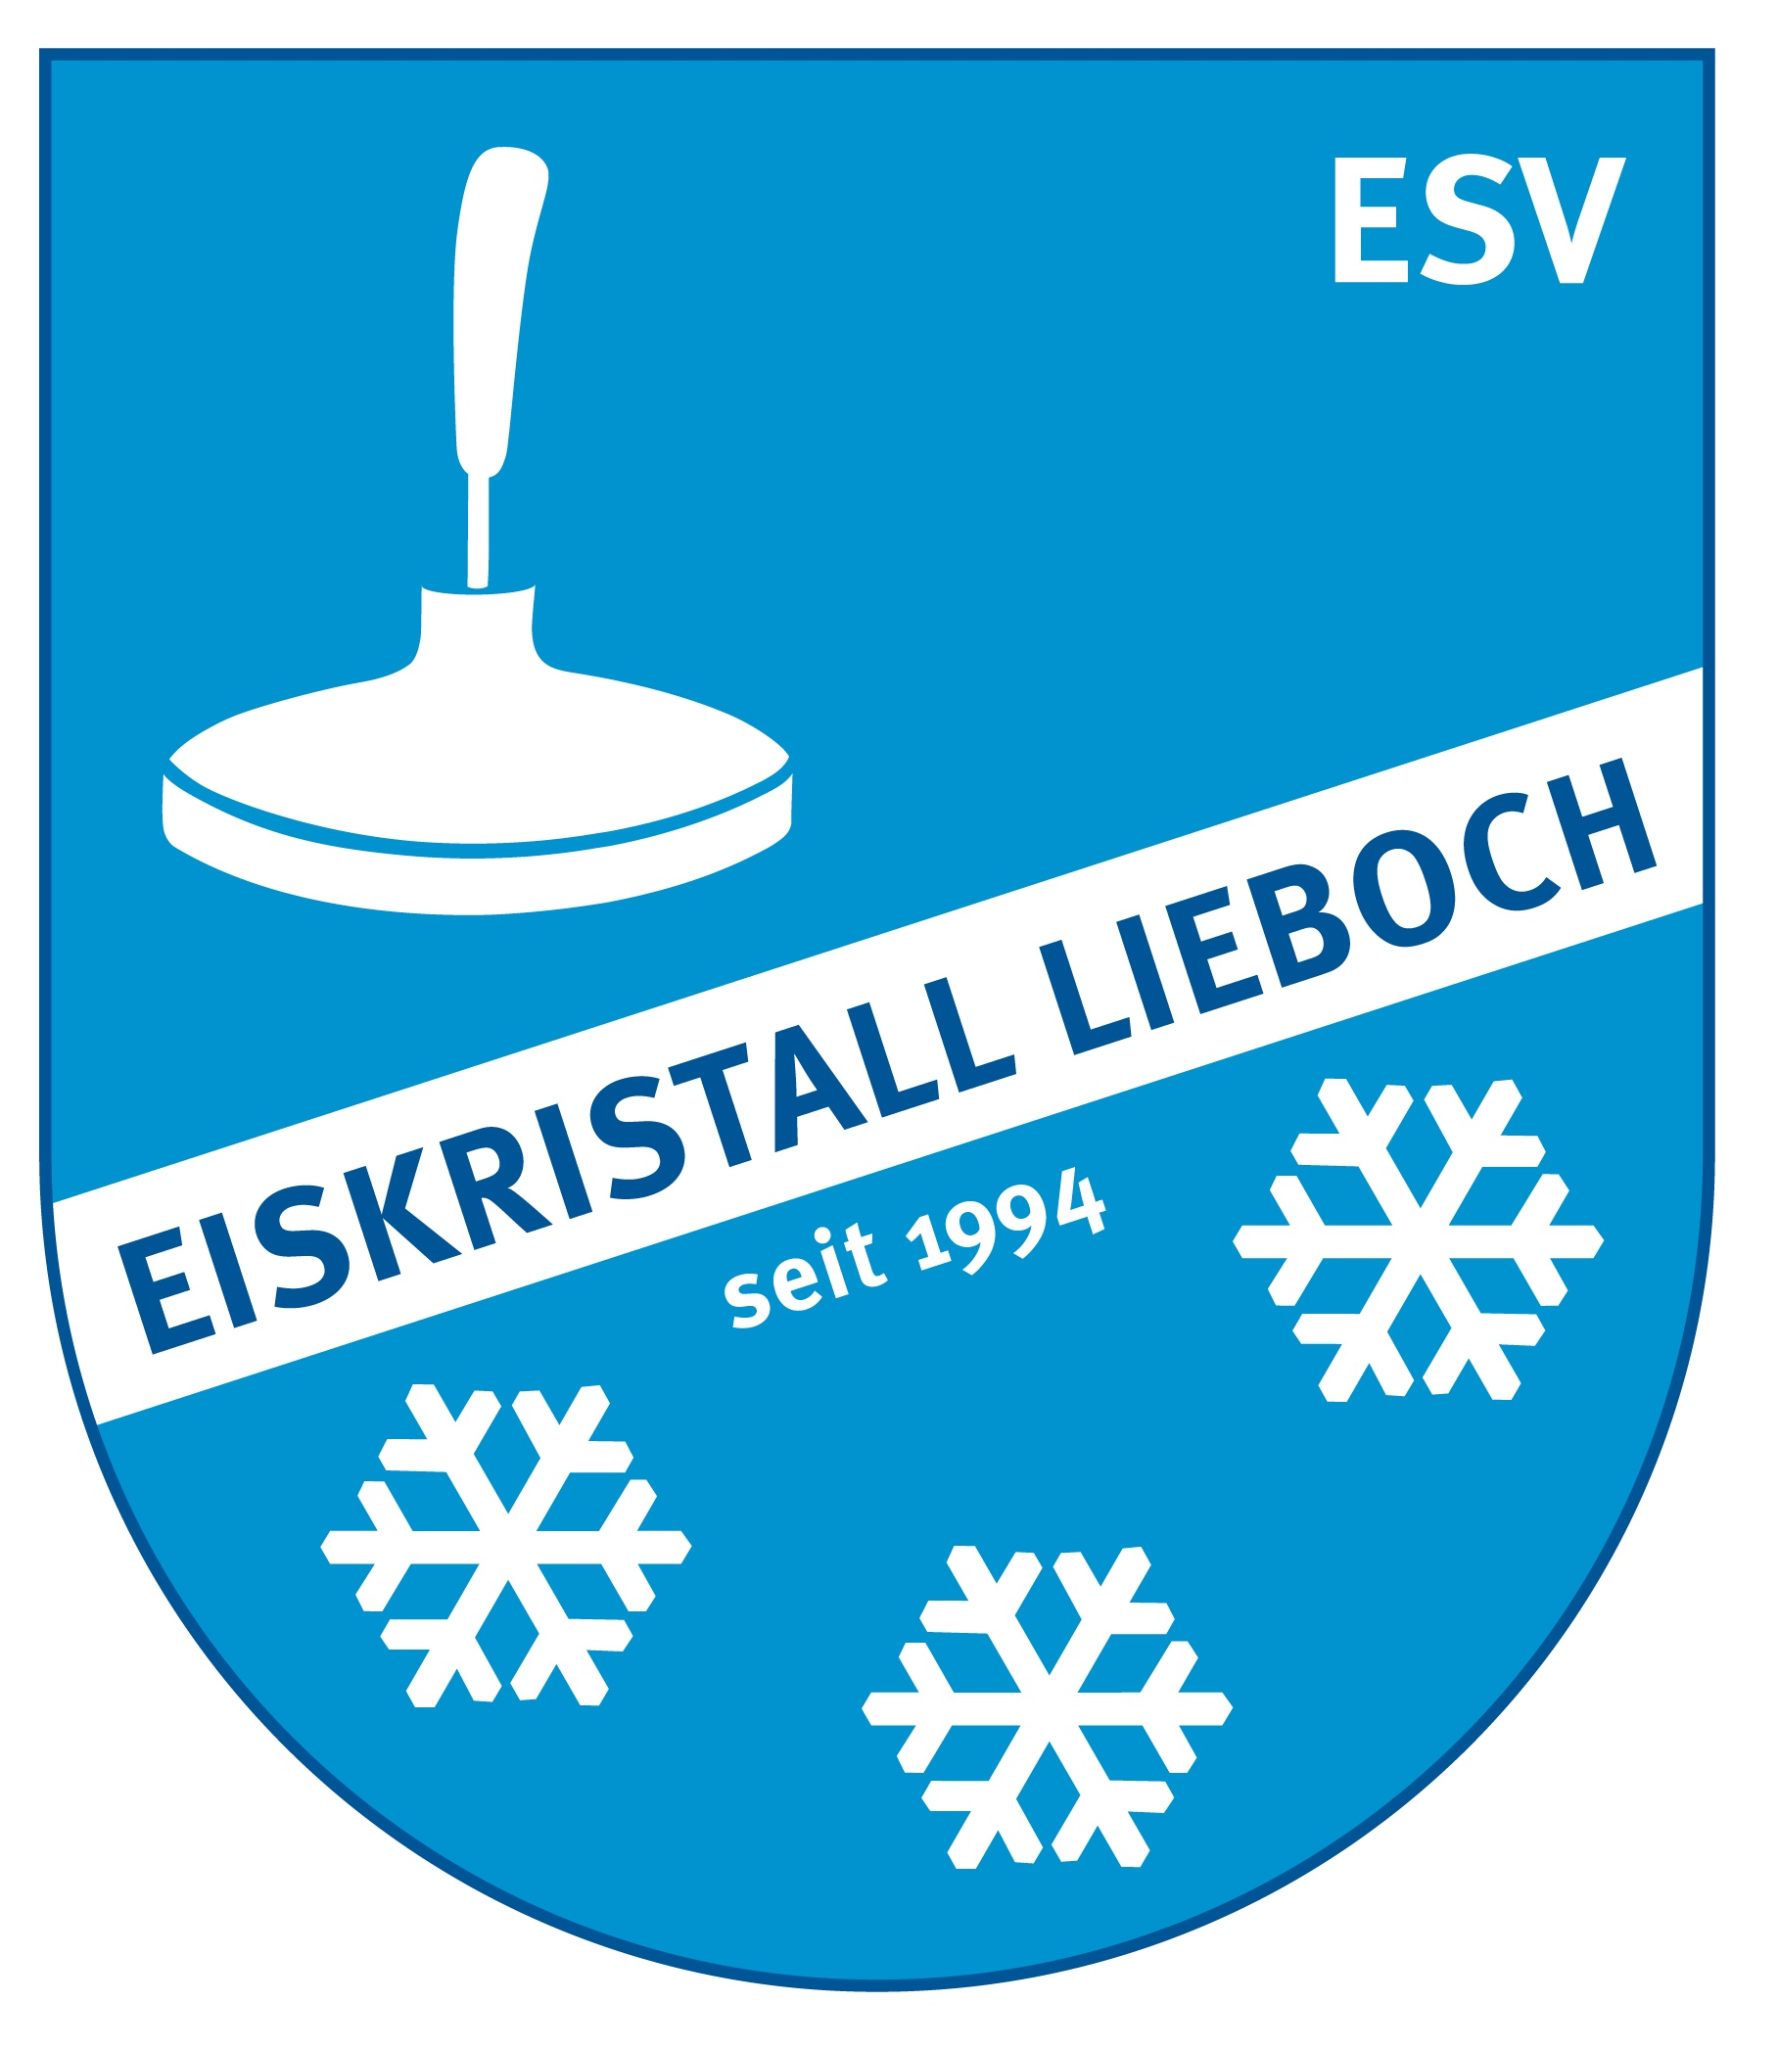 ESV Eiskristall Lieboch 1 (ST)